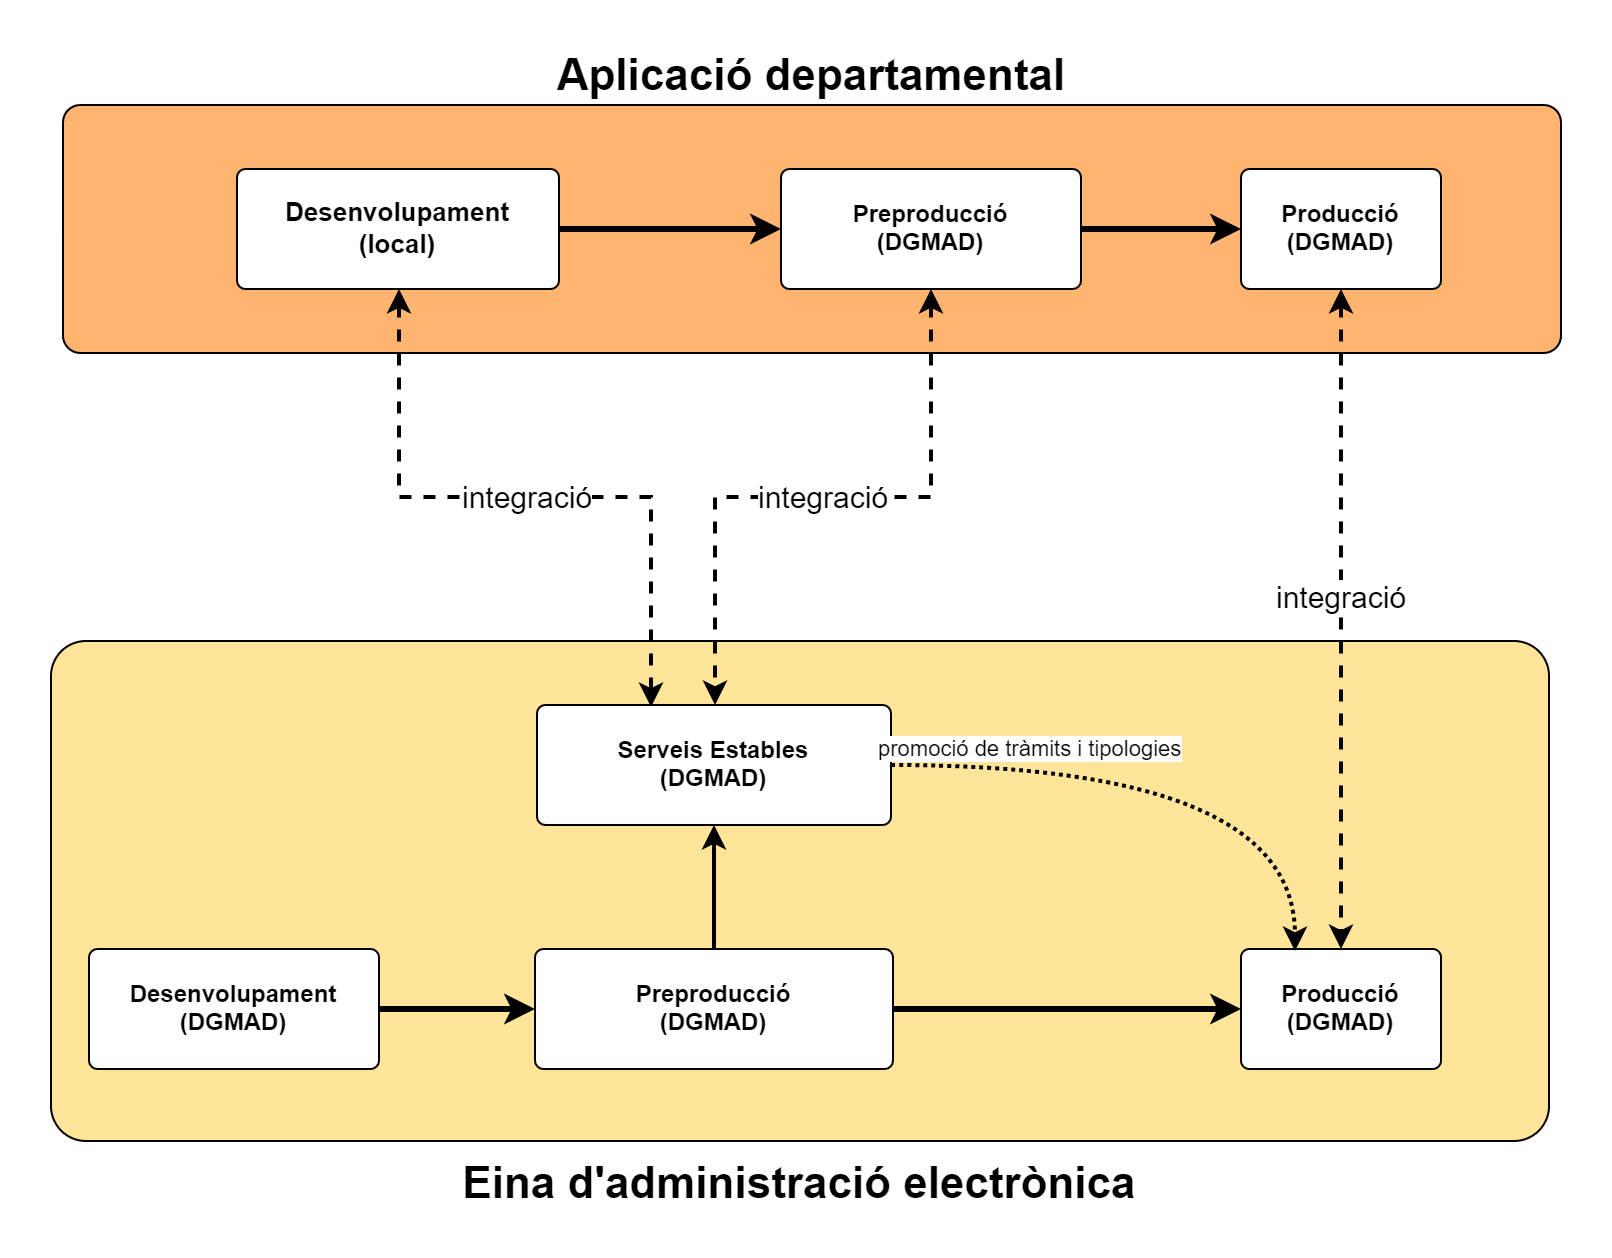 Esquema d'integració d'una aplicació departamental amb les eines d'administració electrònica